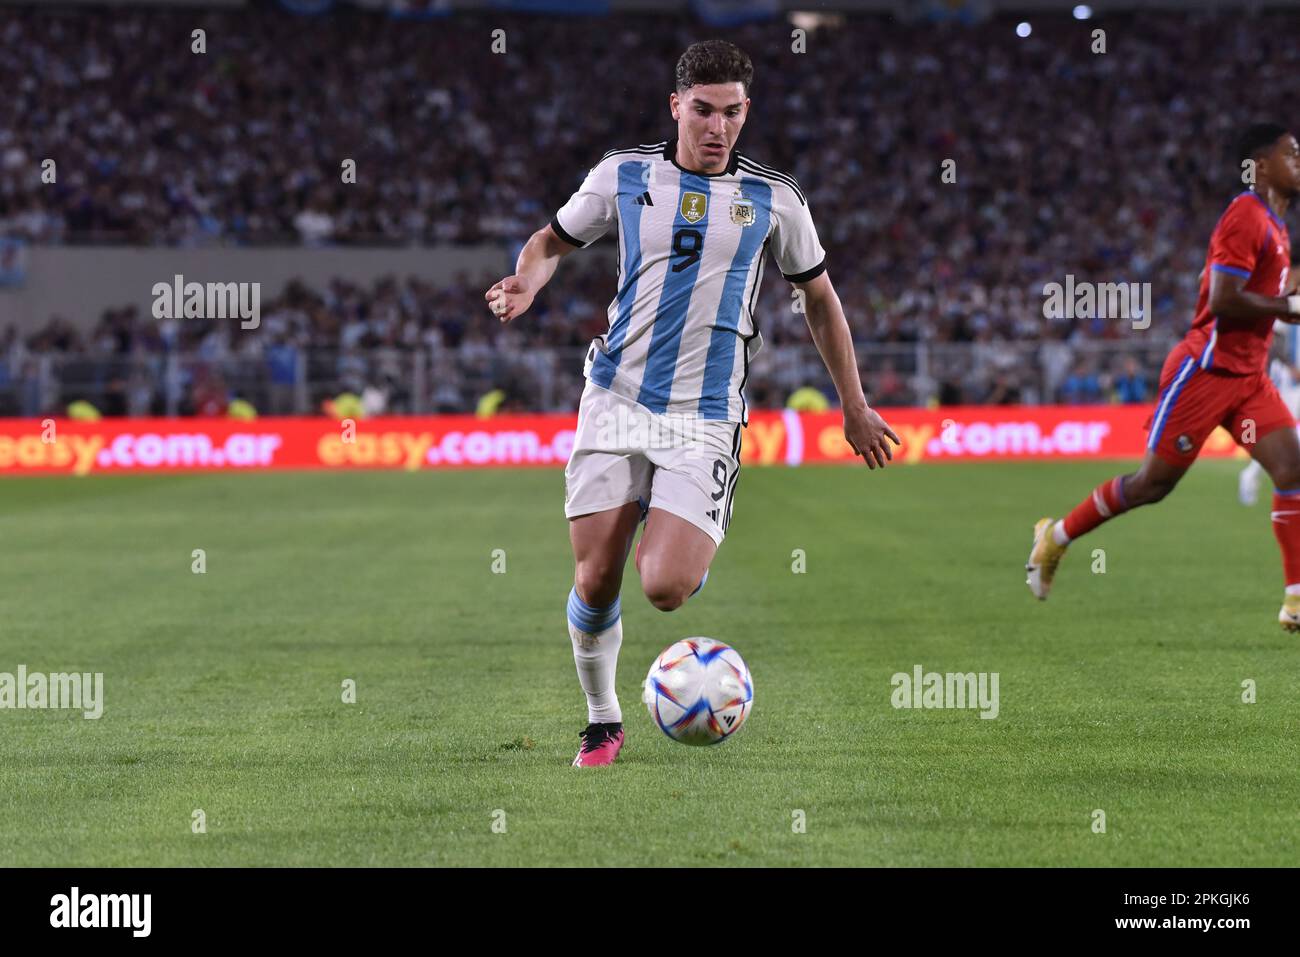 BUENOS AIRES, ARGENTINIEN - APRIL 23: Julian Alvarez während eines Spiels zwischen Argentinien und Panama im Estadio Mas Monumental. Stockfoto